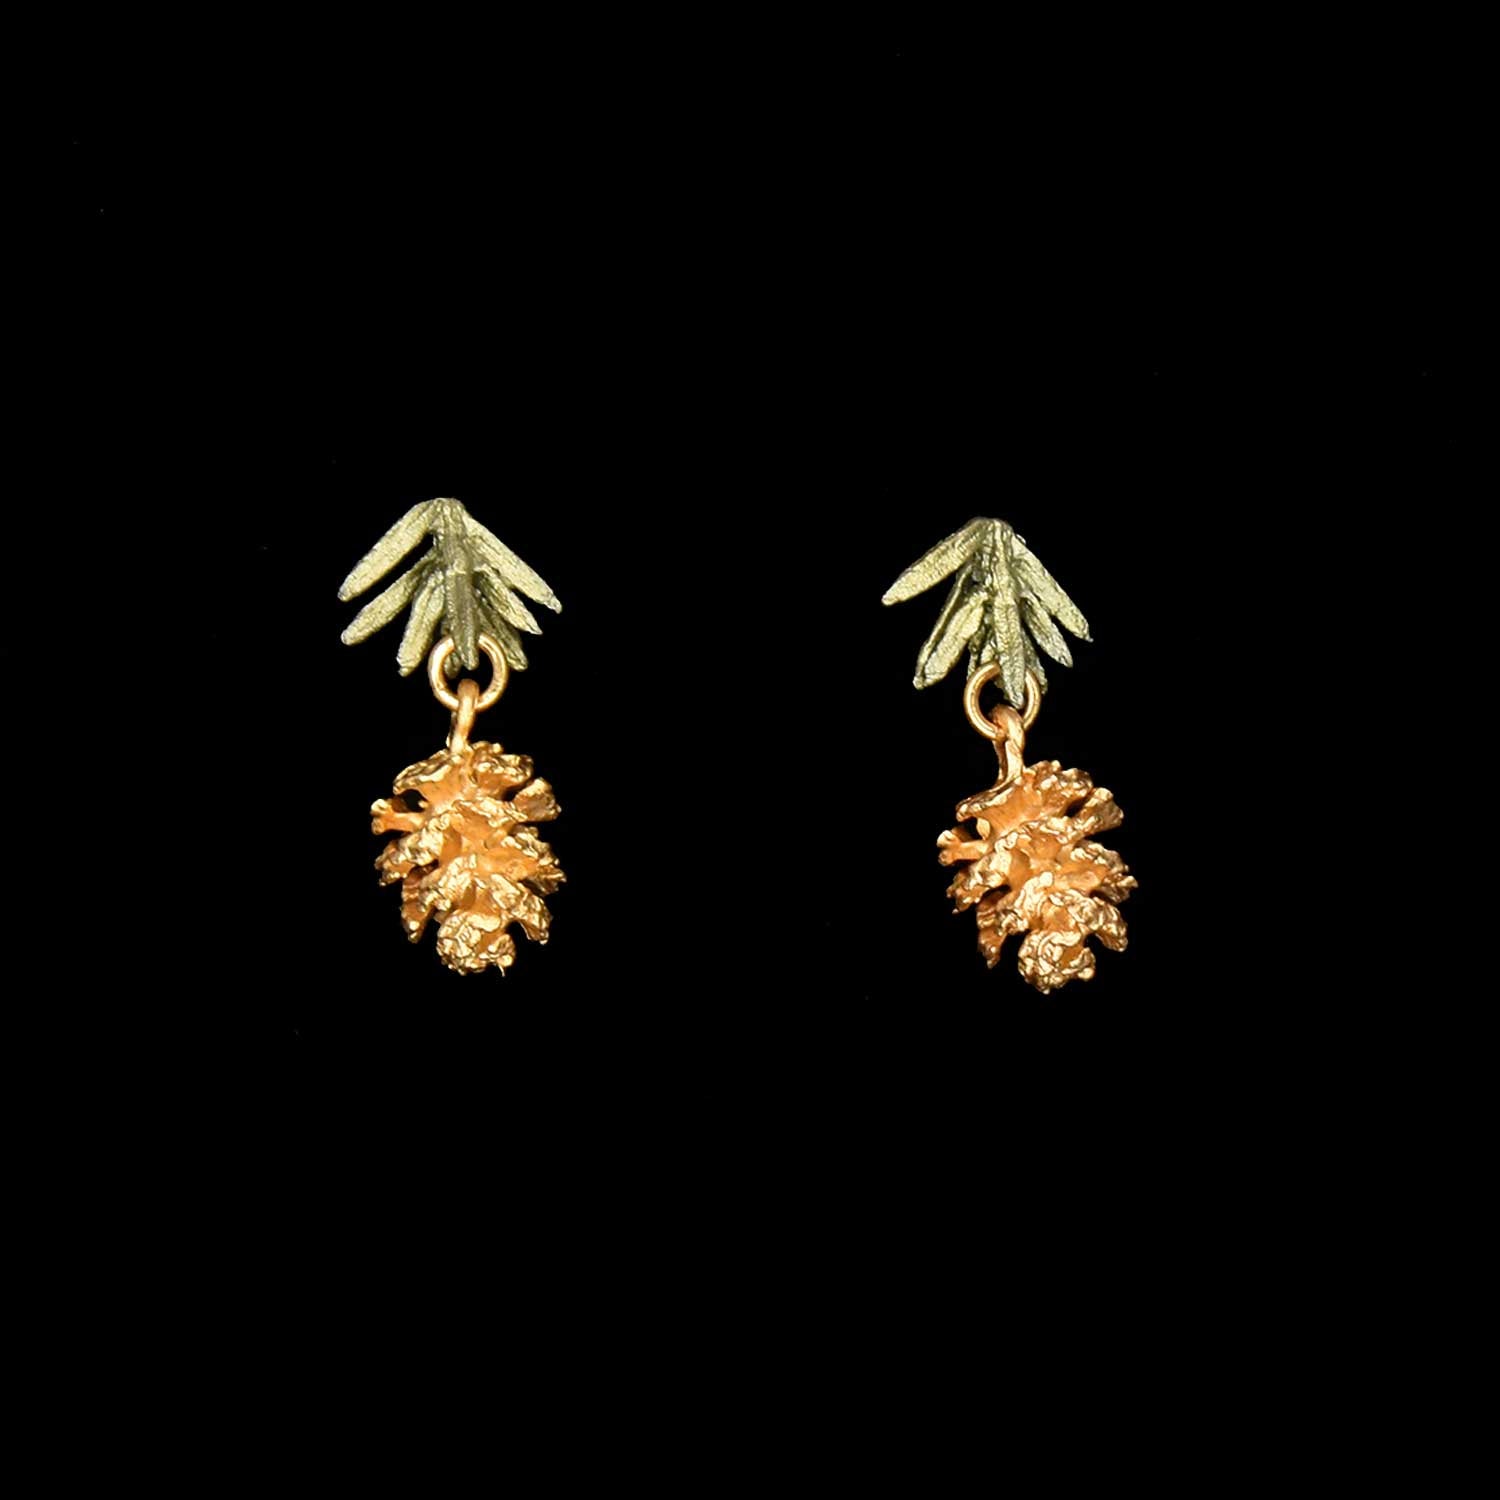 Pine Needle Post Earrings